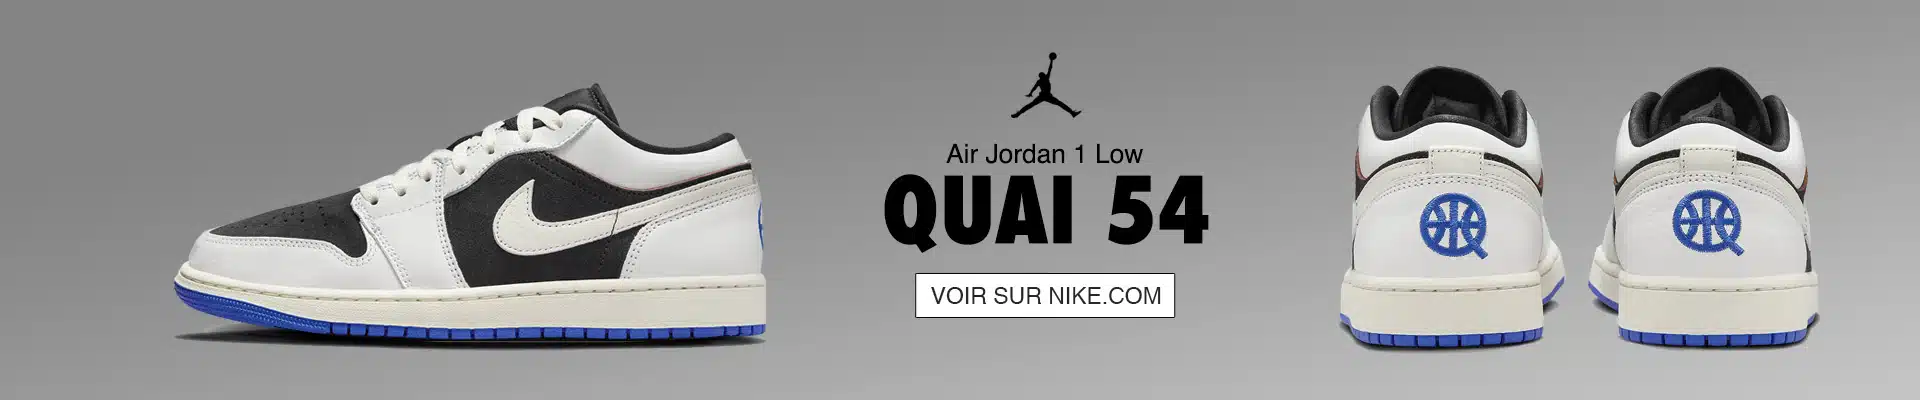 Air Jordan 1 Quai 54